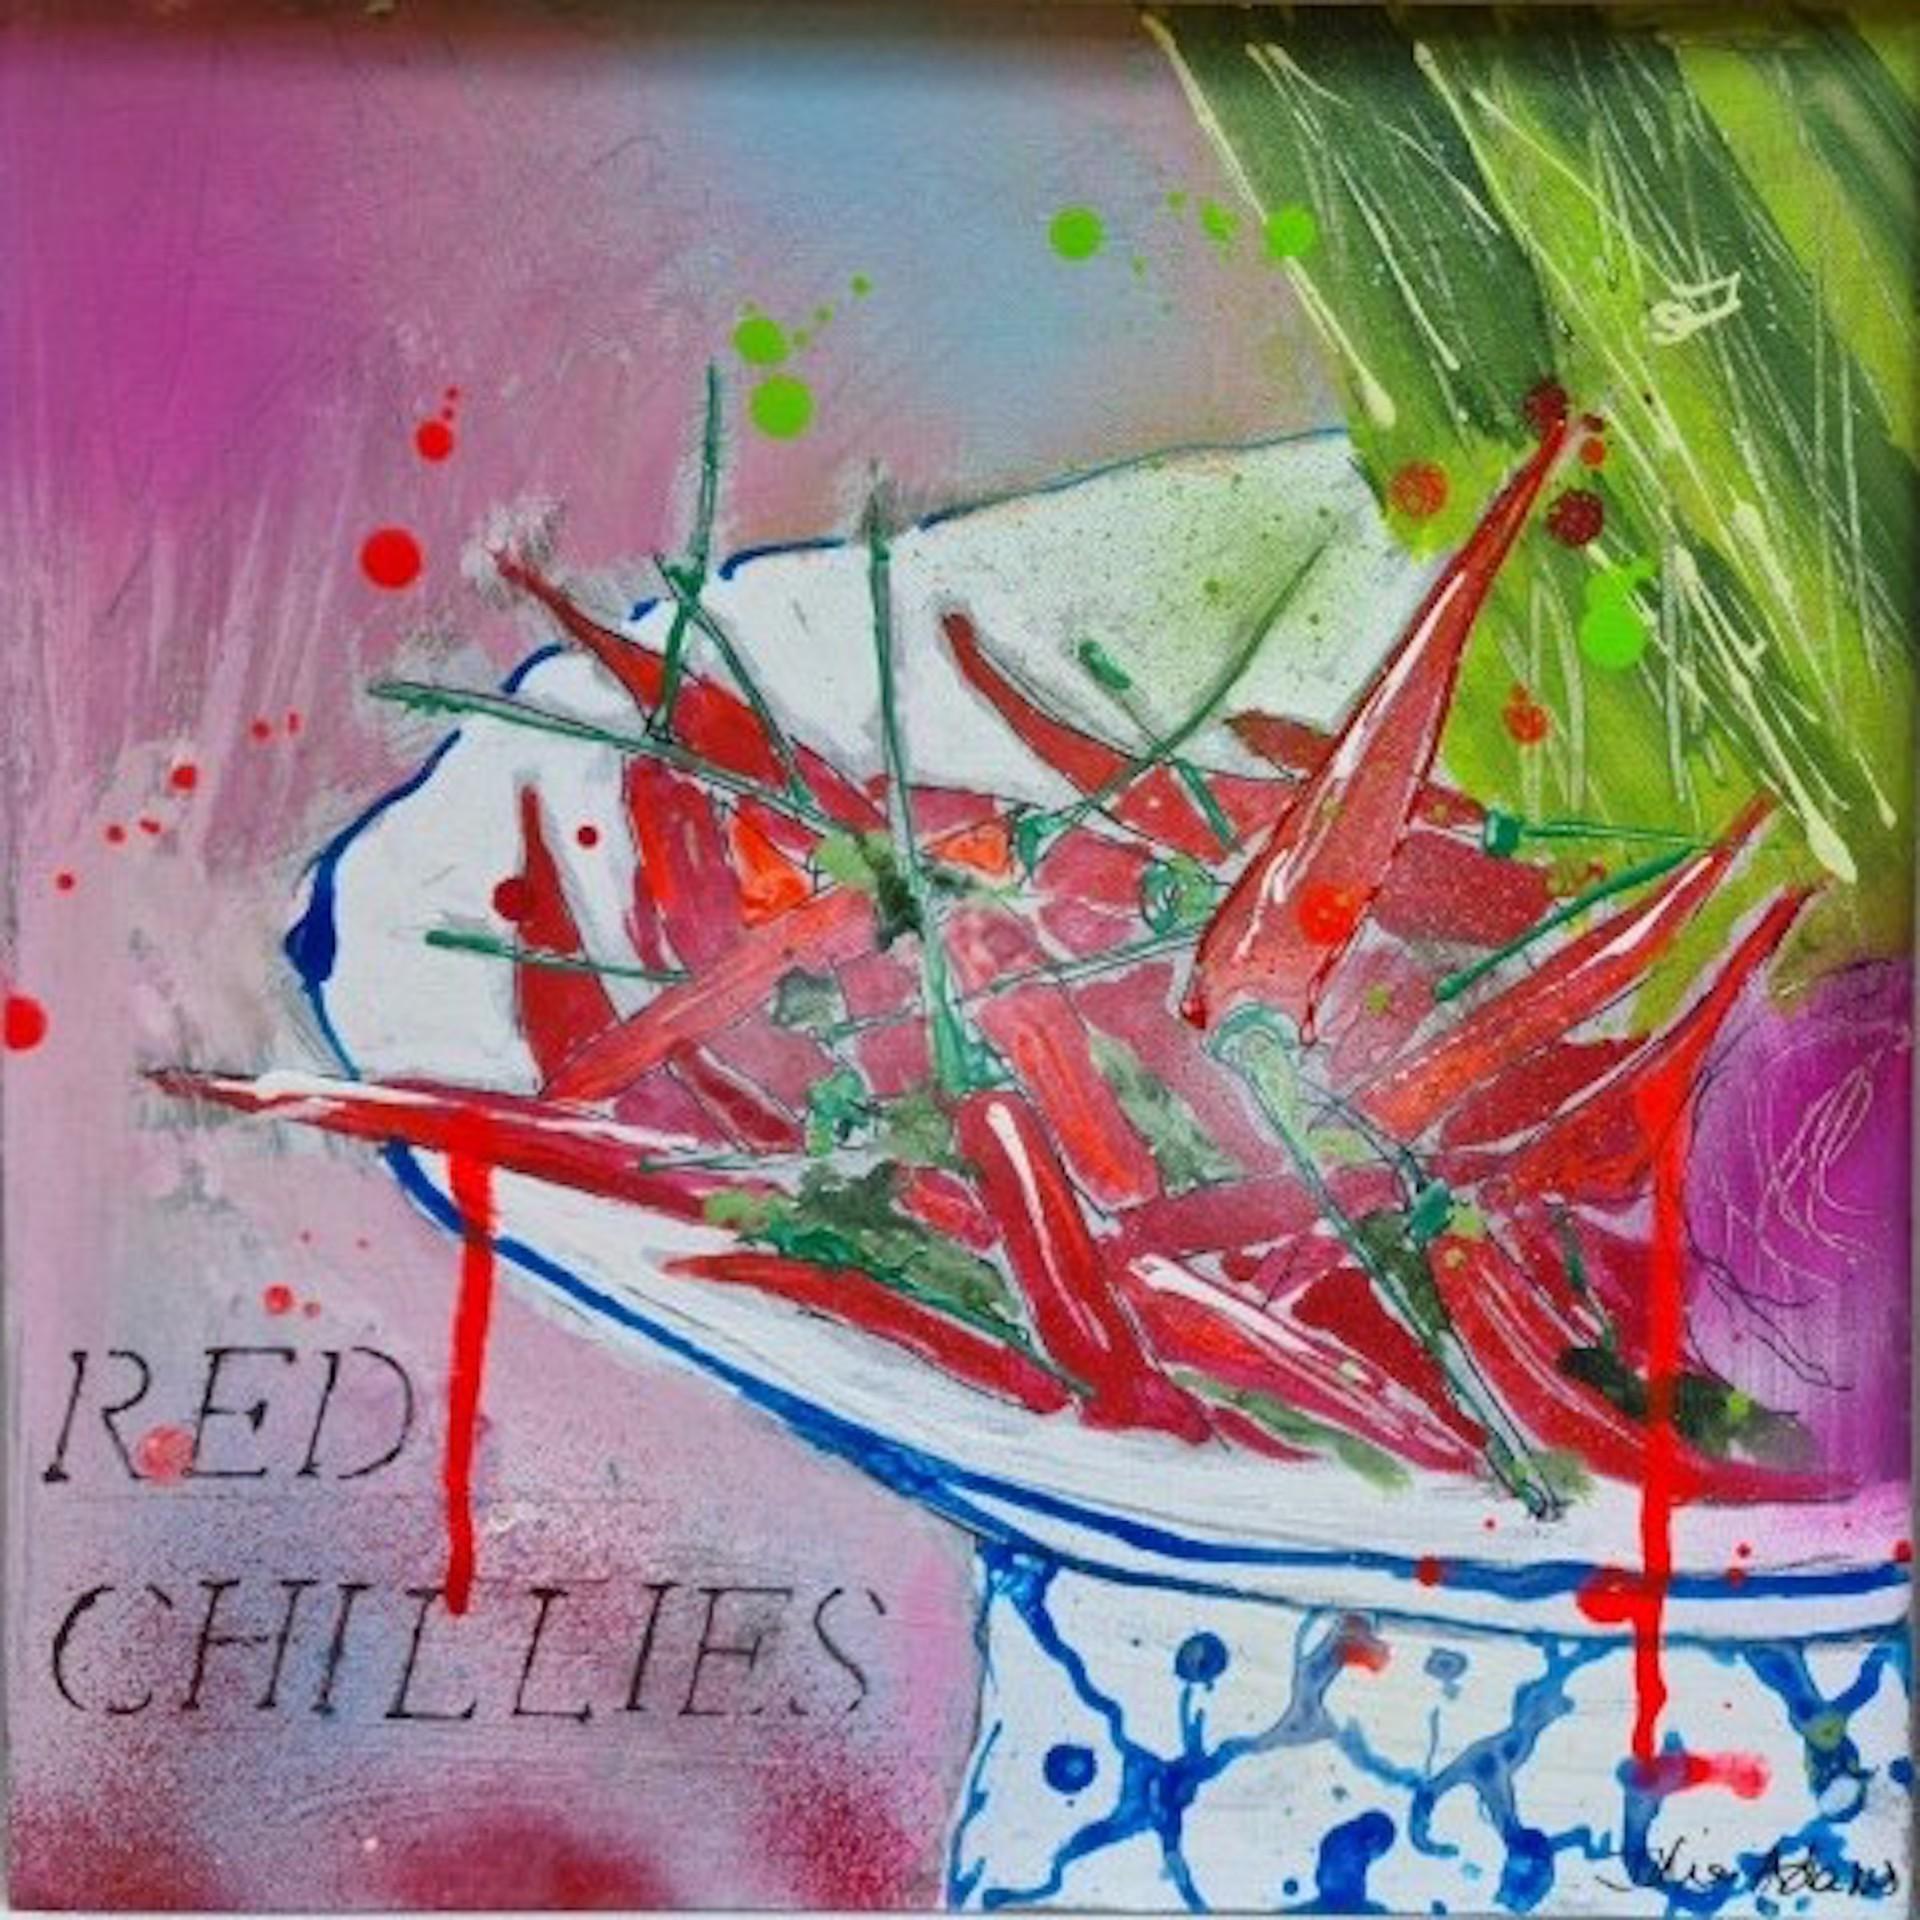 Piments rouges par Julia Adams [2021]
Original
Encre, acrylique et peinture en aérosol sur carton
Taille de l'image : H:30 cm x L:30 cm
Dimensions complètes de l'œuvre non encadrée : H:30 cm x L:30 cm x P:0.5cm
Encadré Taille : H:36 cm x L:36 cm x